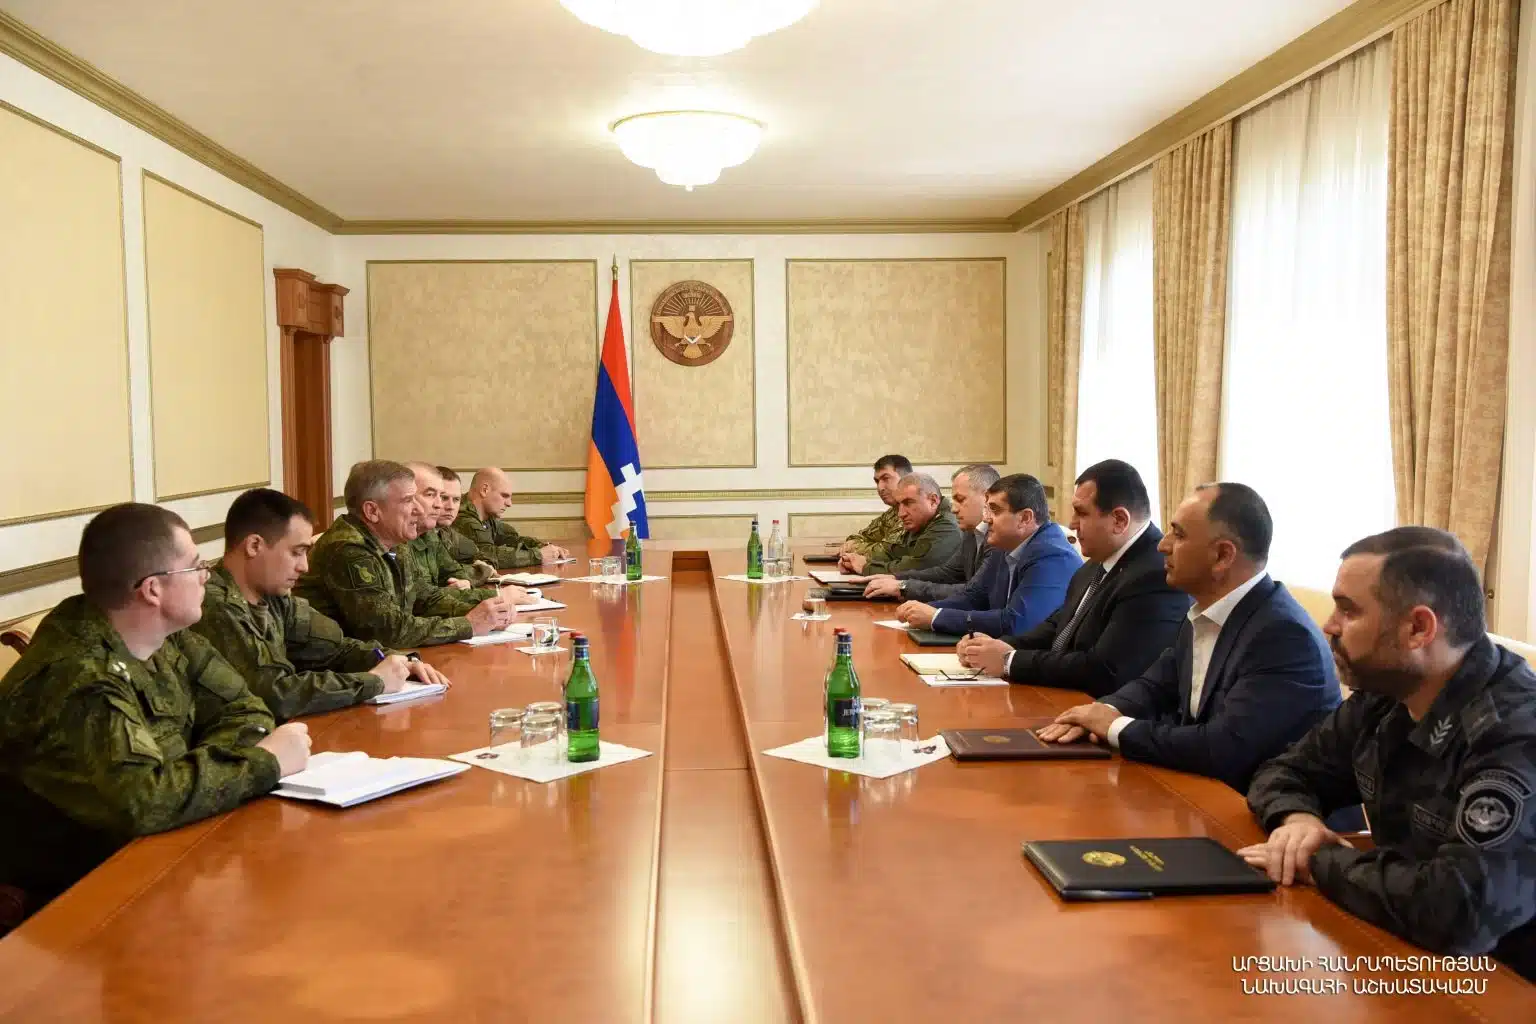 Արցախի նախագահը հանդիպել է ՌԴ խաղաղապահների նորանշանակ հրամանատարին